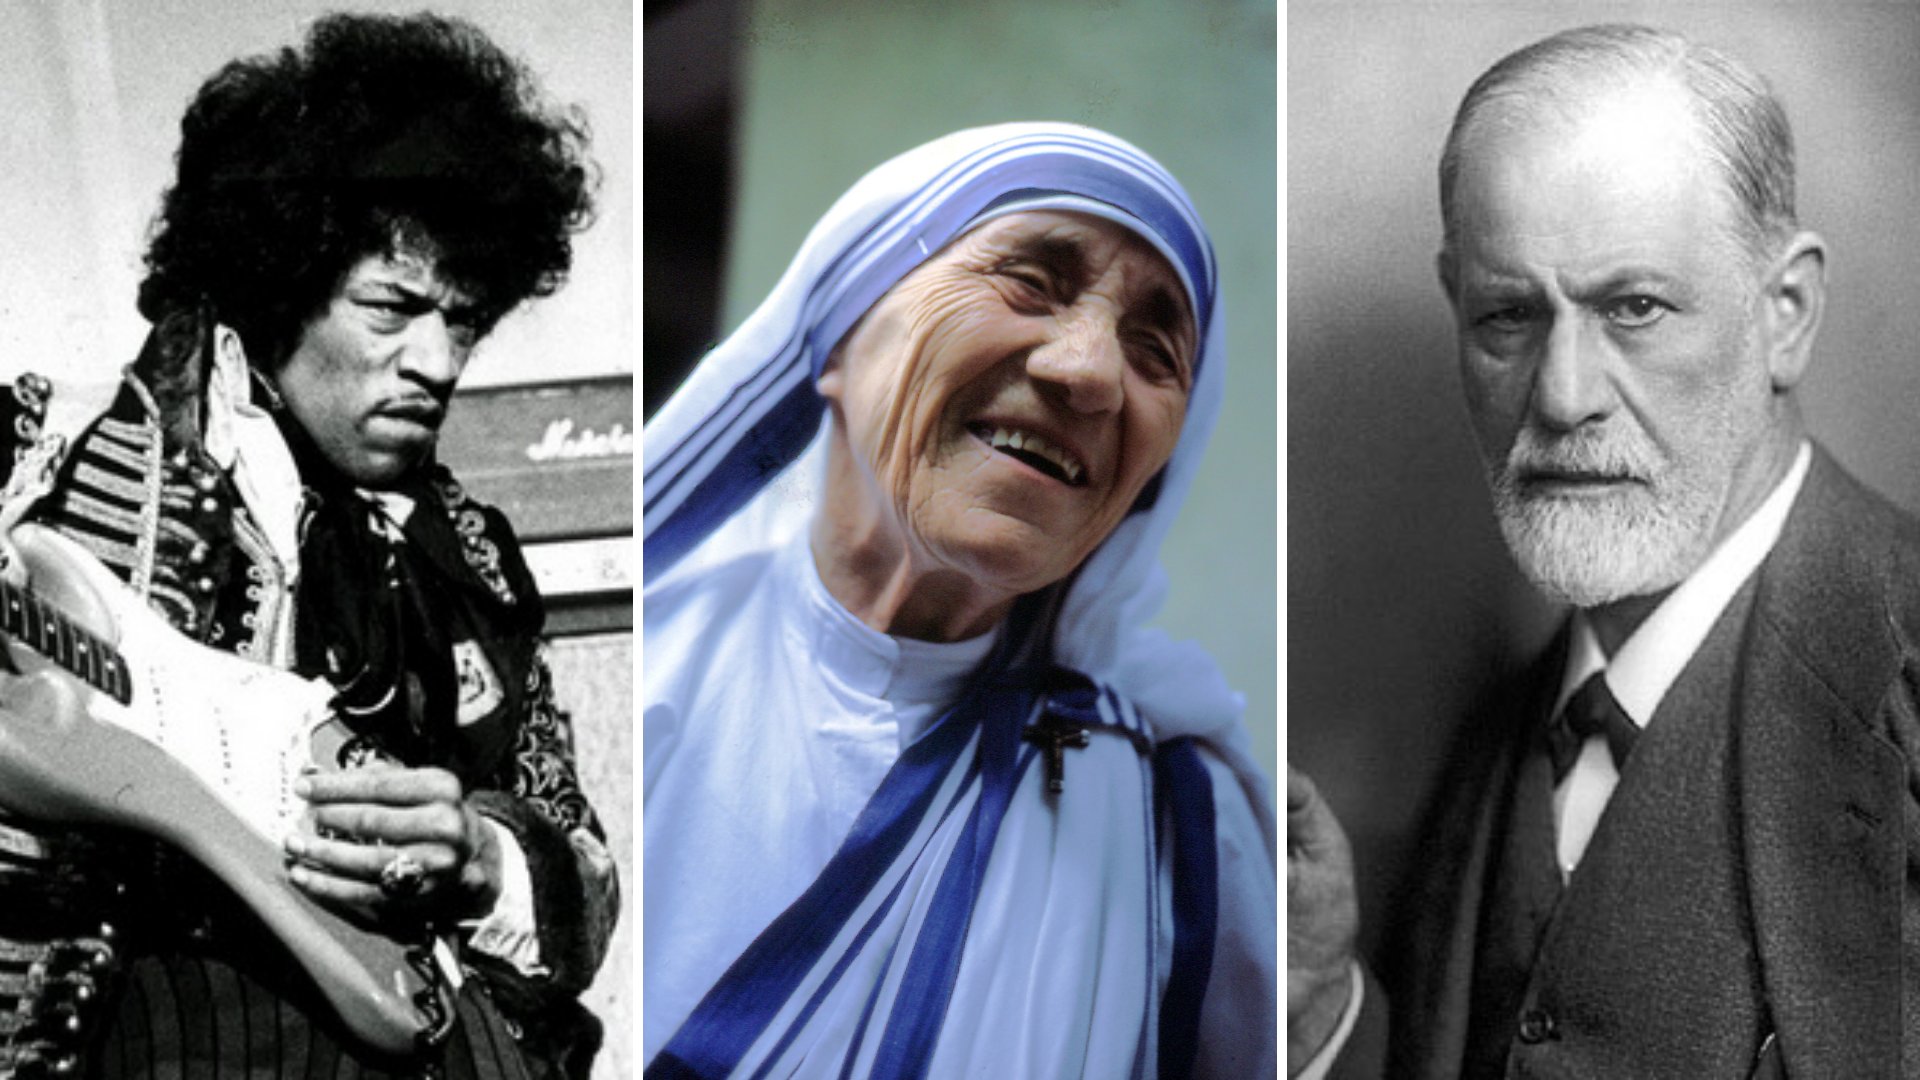 Imagem em frame do guitarrista Jimi Hendrix, da Madre Teresa de Calcutá e do psiquiatra Sigmund Freud